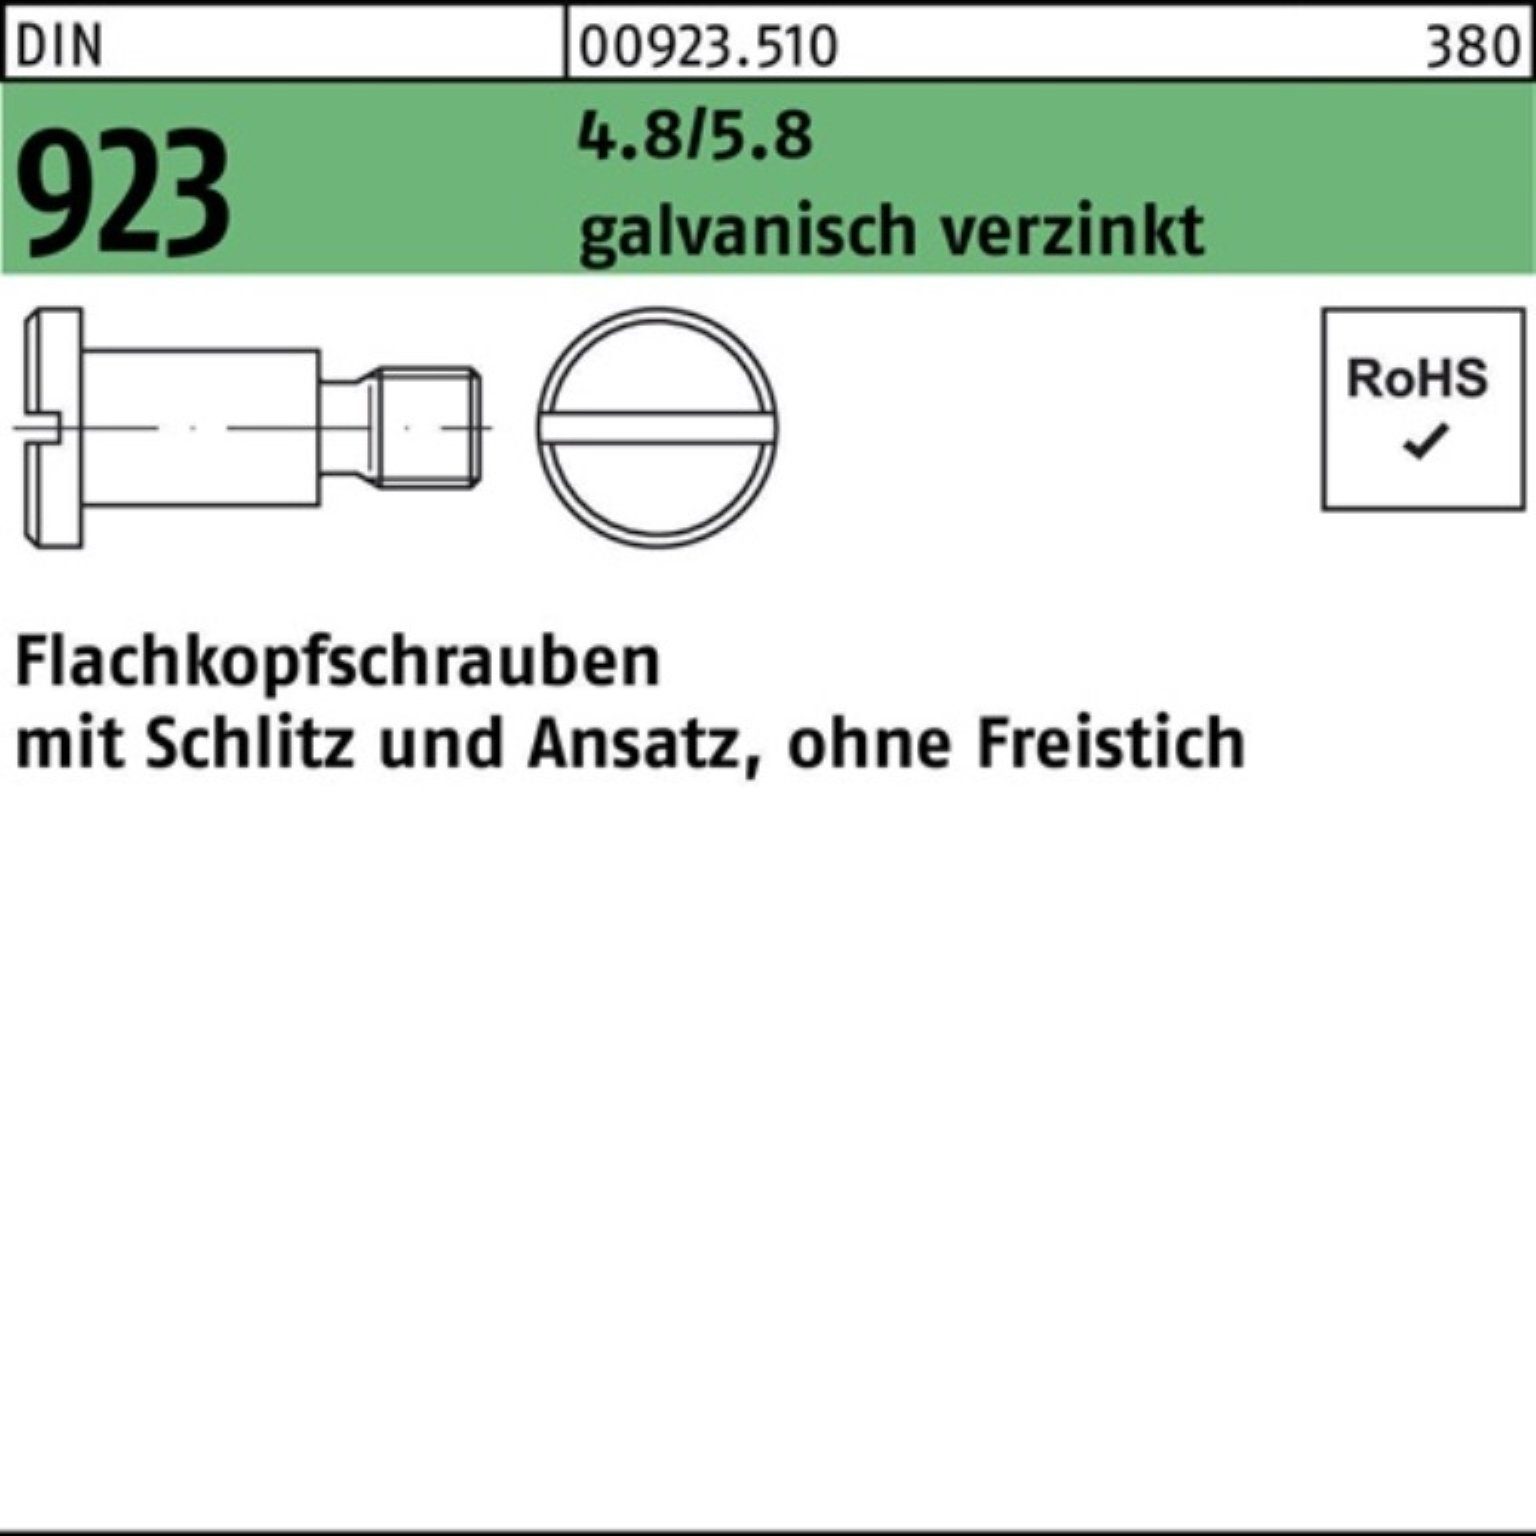 M5x16x7,0 Flachkopfschraube Reyher Schlitz/Ansatz Pack 4.8/5.8 100er Schraube DIN 923